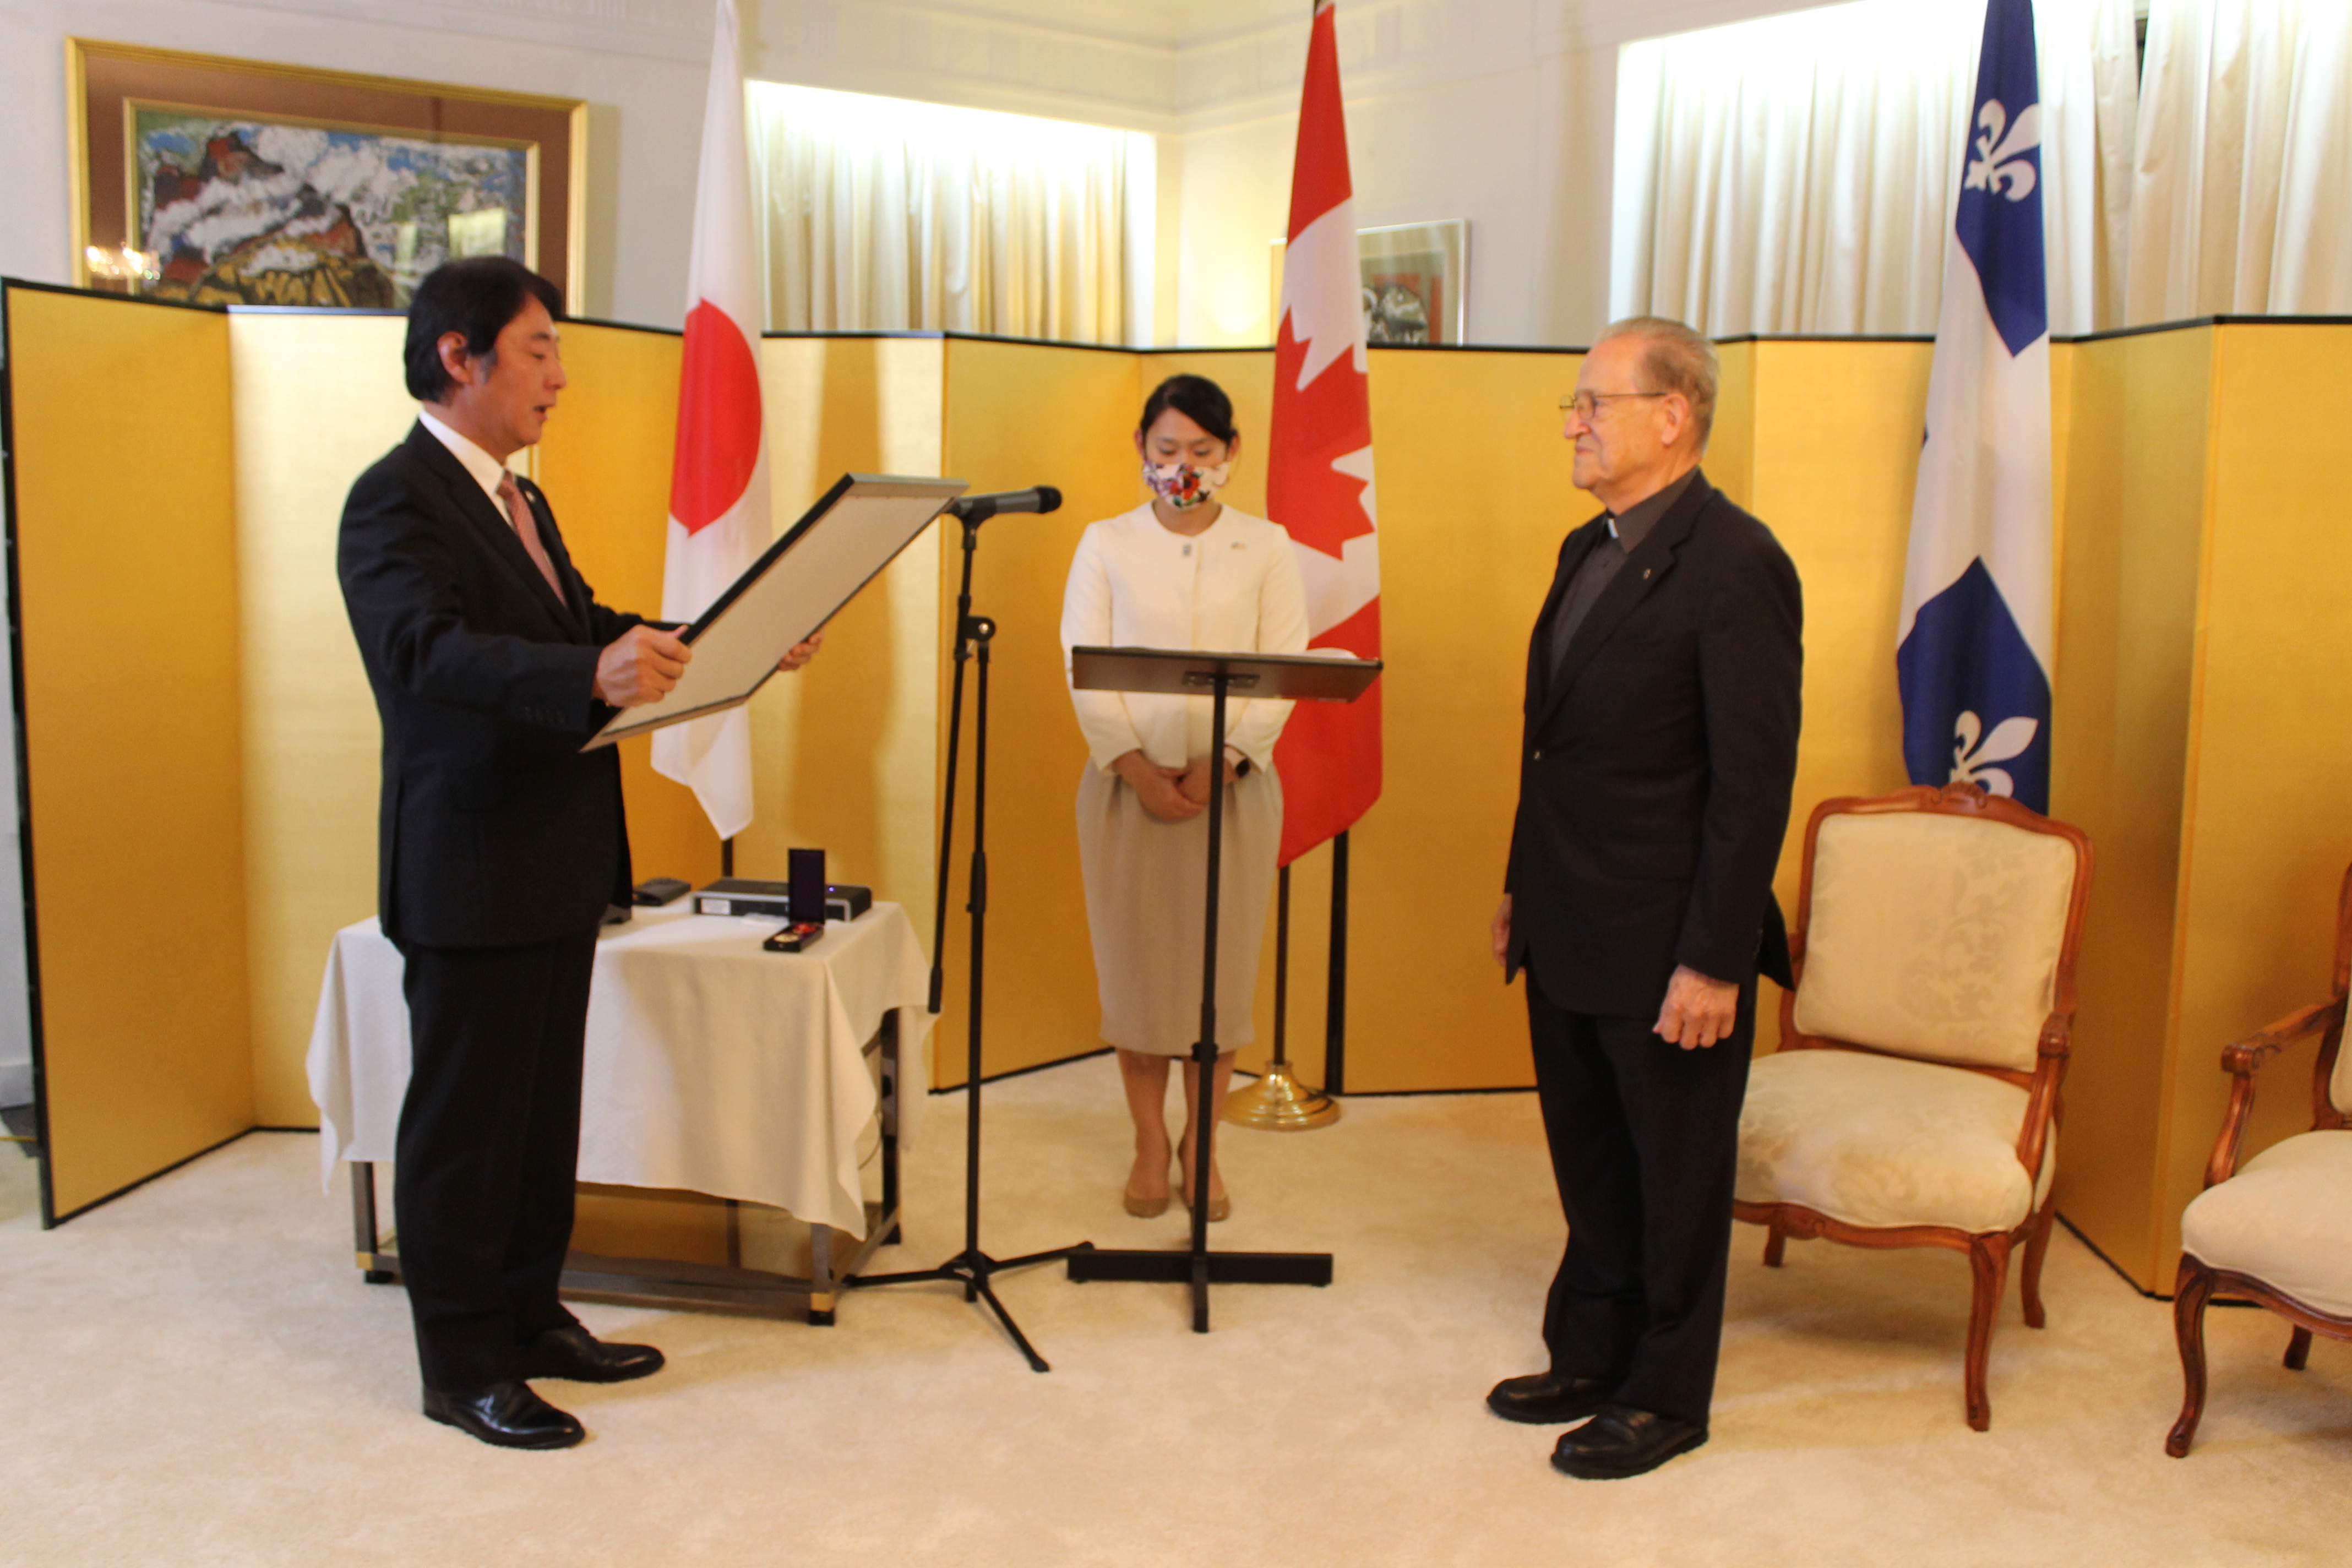 El Cónsul General de Japón rinde homenaje al P. Gaétan Labadie